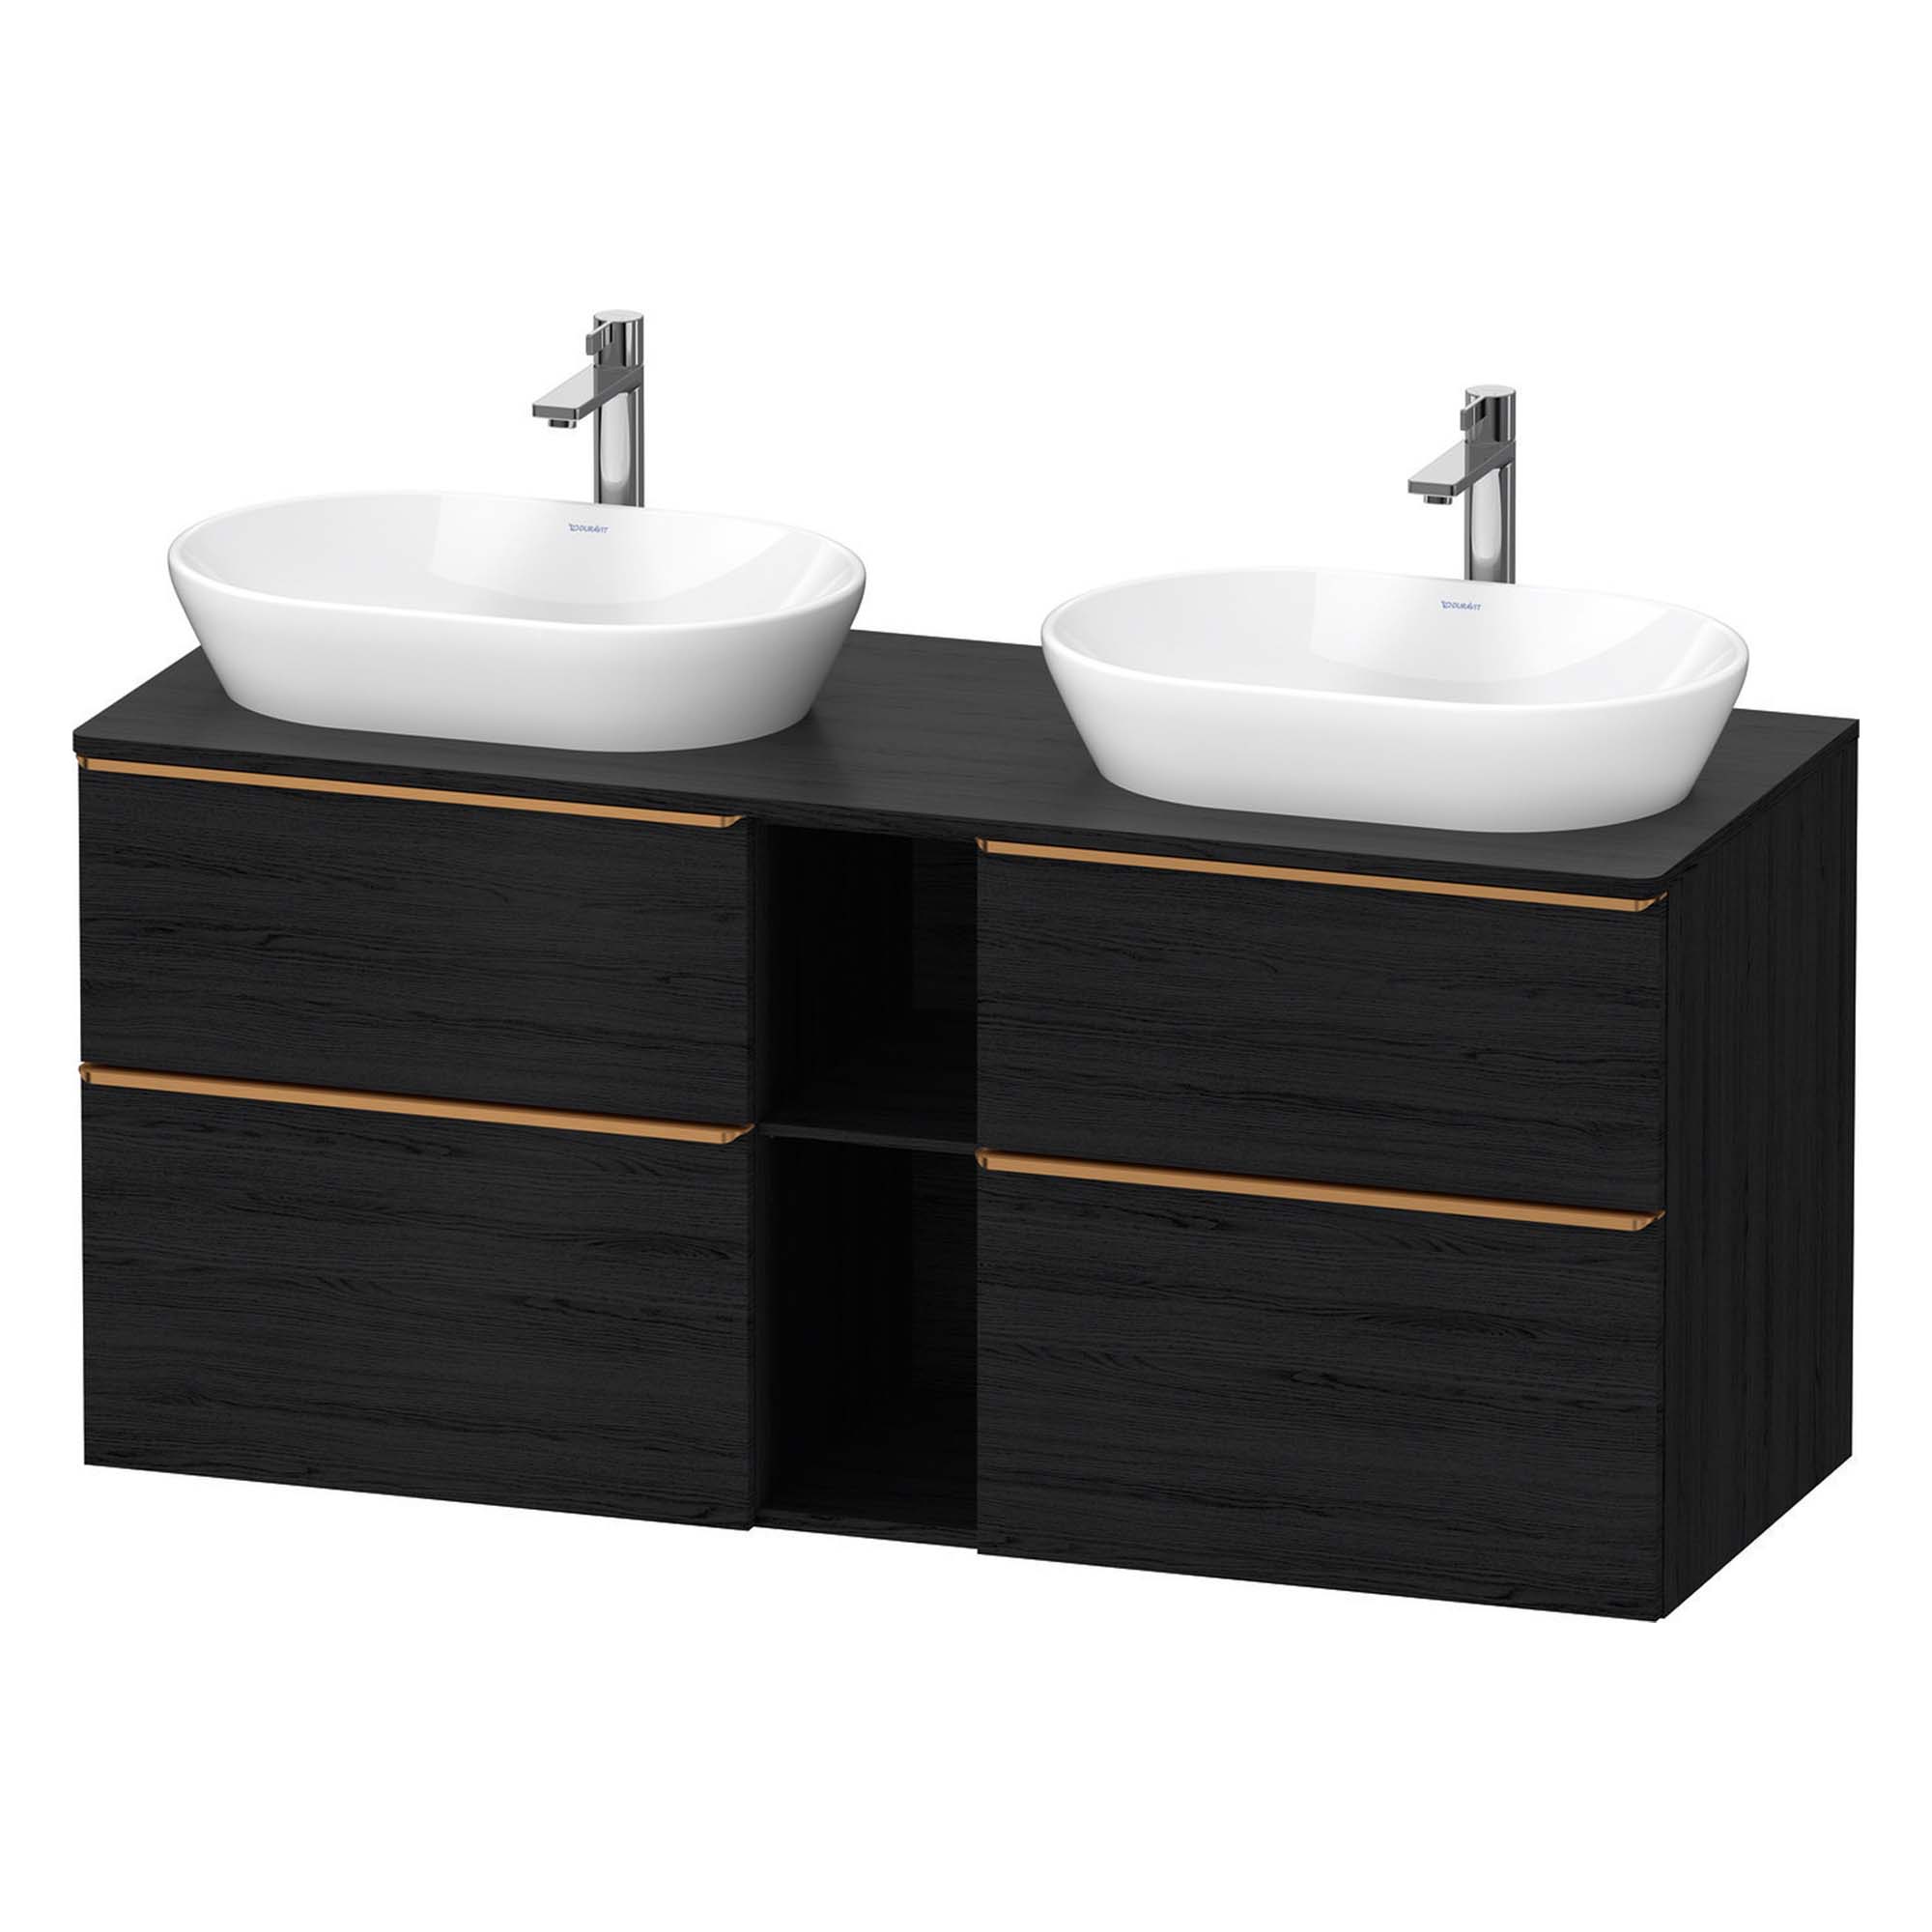 http://deluxebathrooms.co.uk/cdn/shop/products/duravit-d-neo-1400-wall-mounted-vanity-unit-with-worktop-2-open-shelves-black-oak-brushed-bronze-handles-deluxe-bathrooms.jpg?v=1710262702